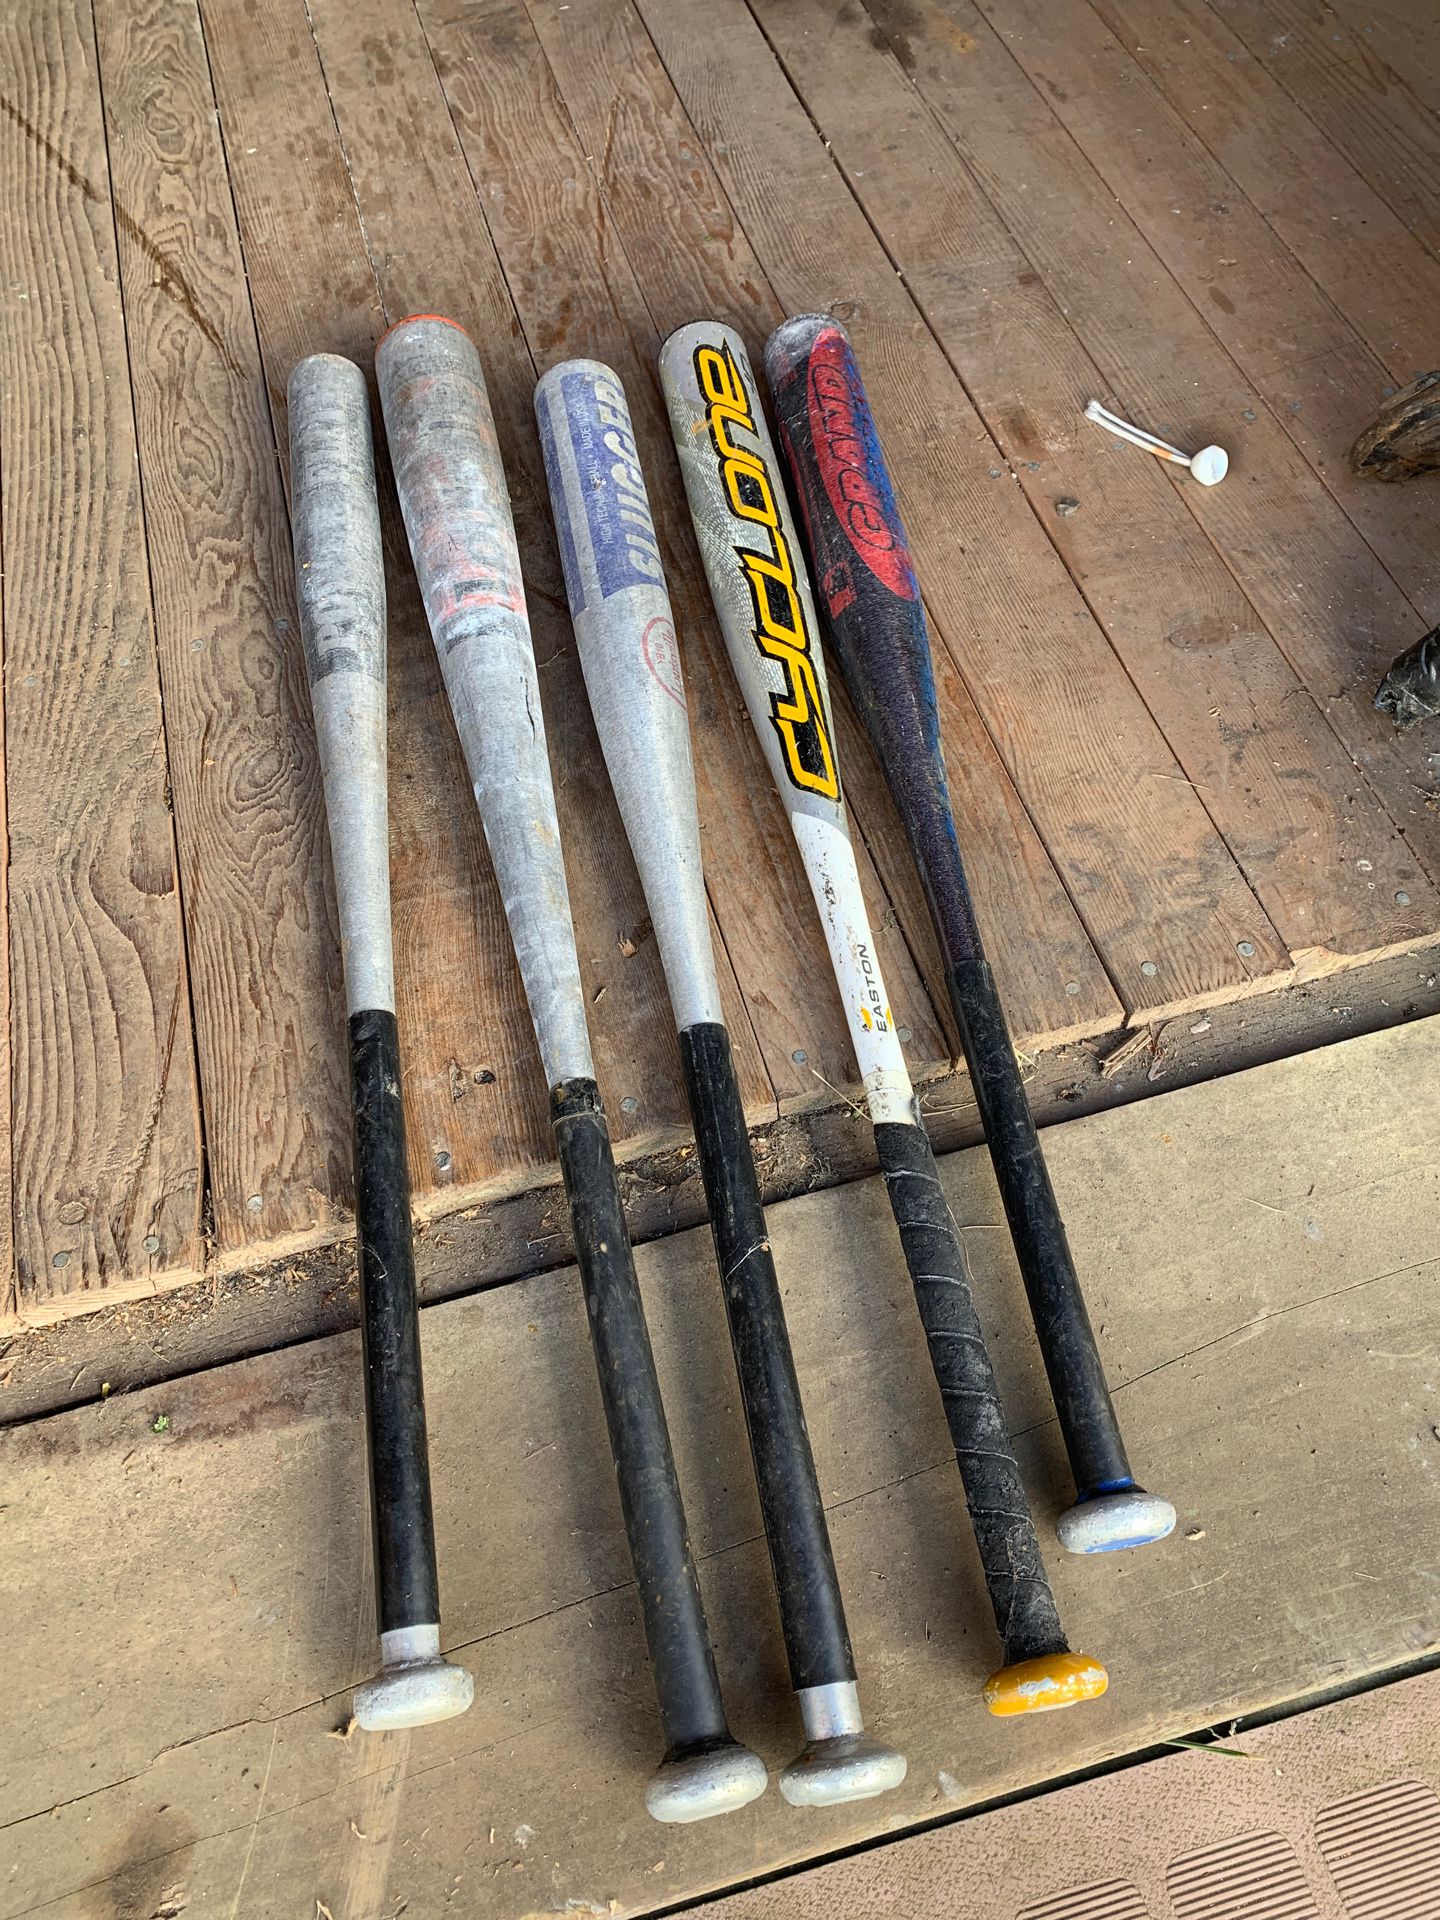 5 baseball bats